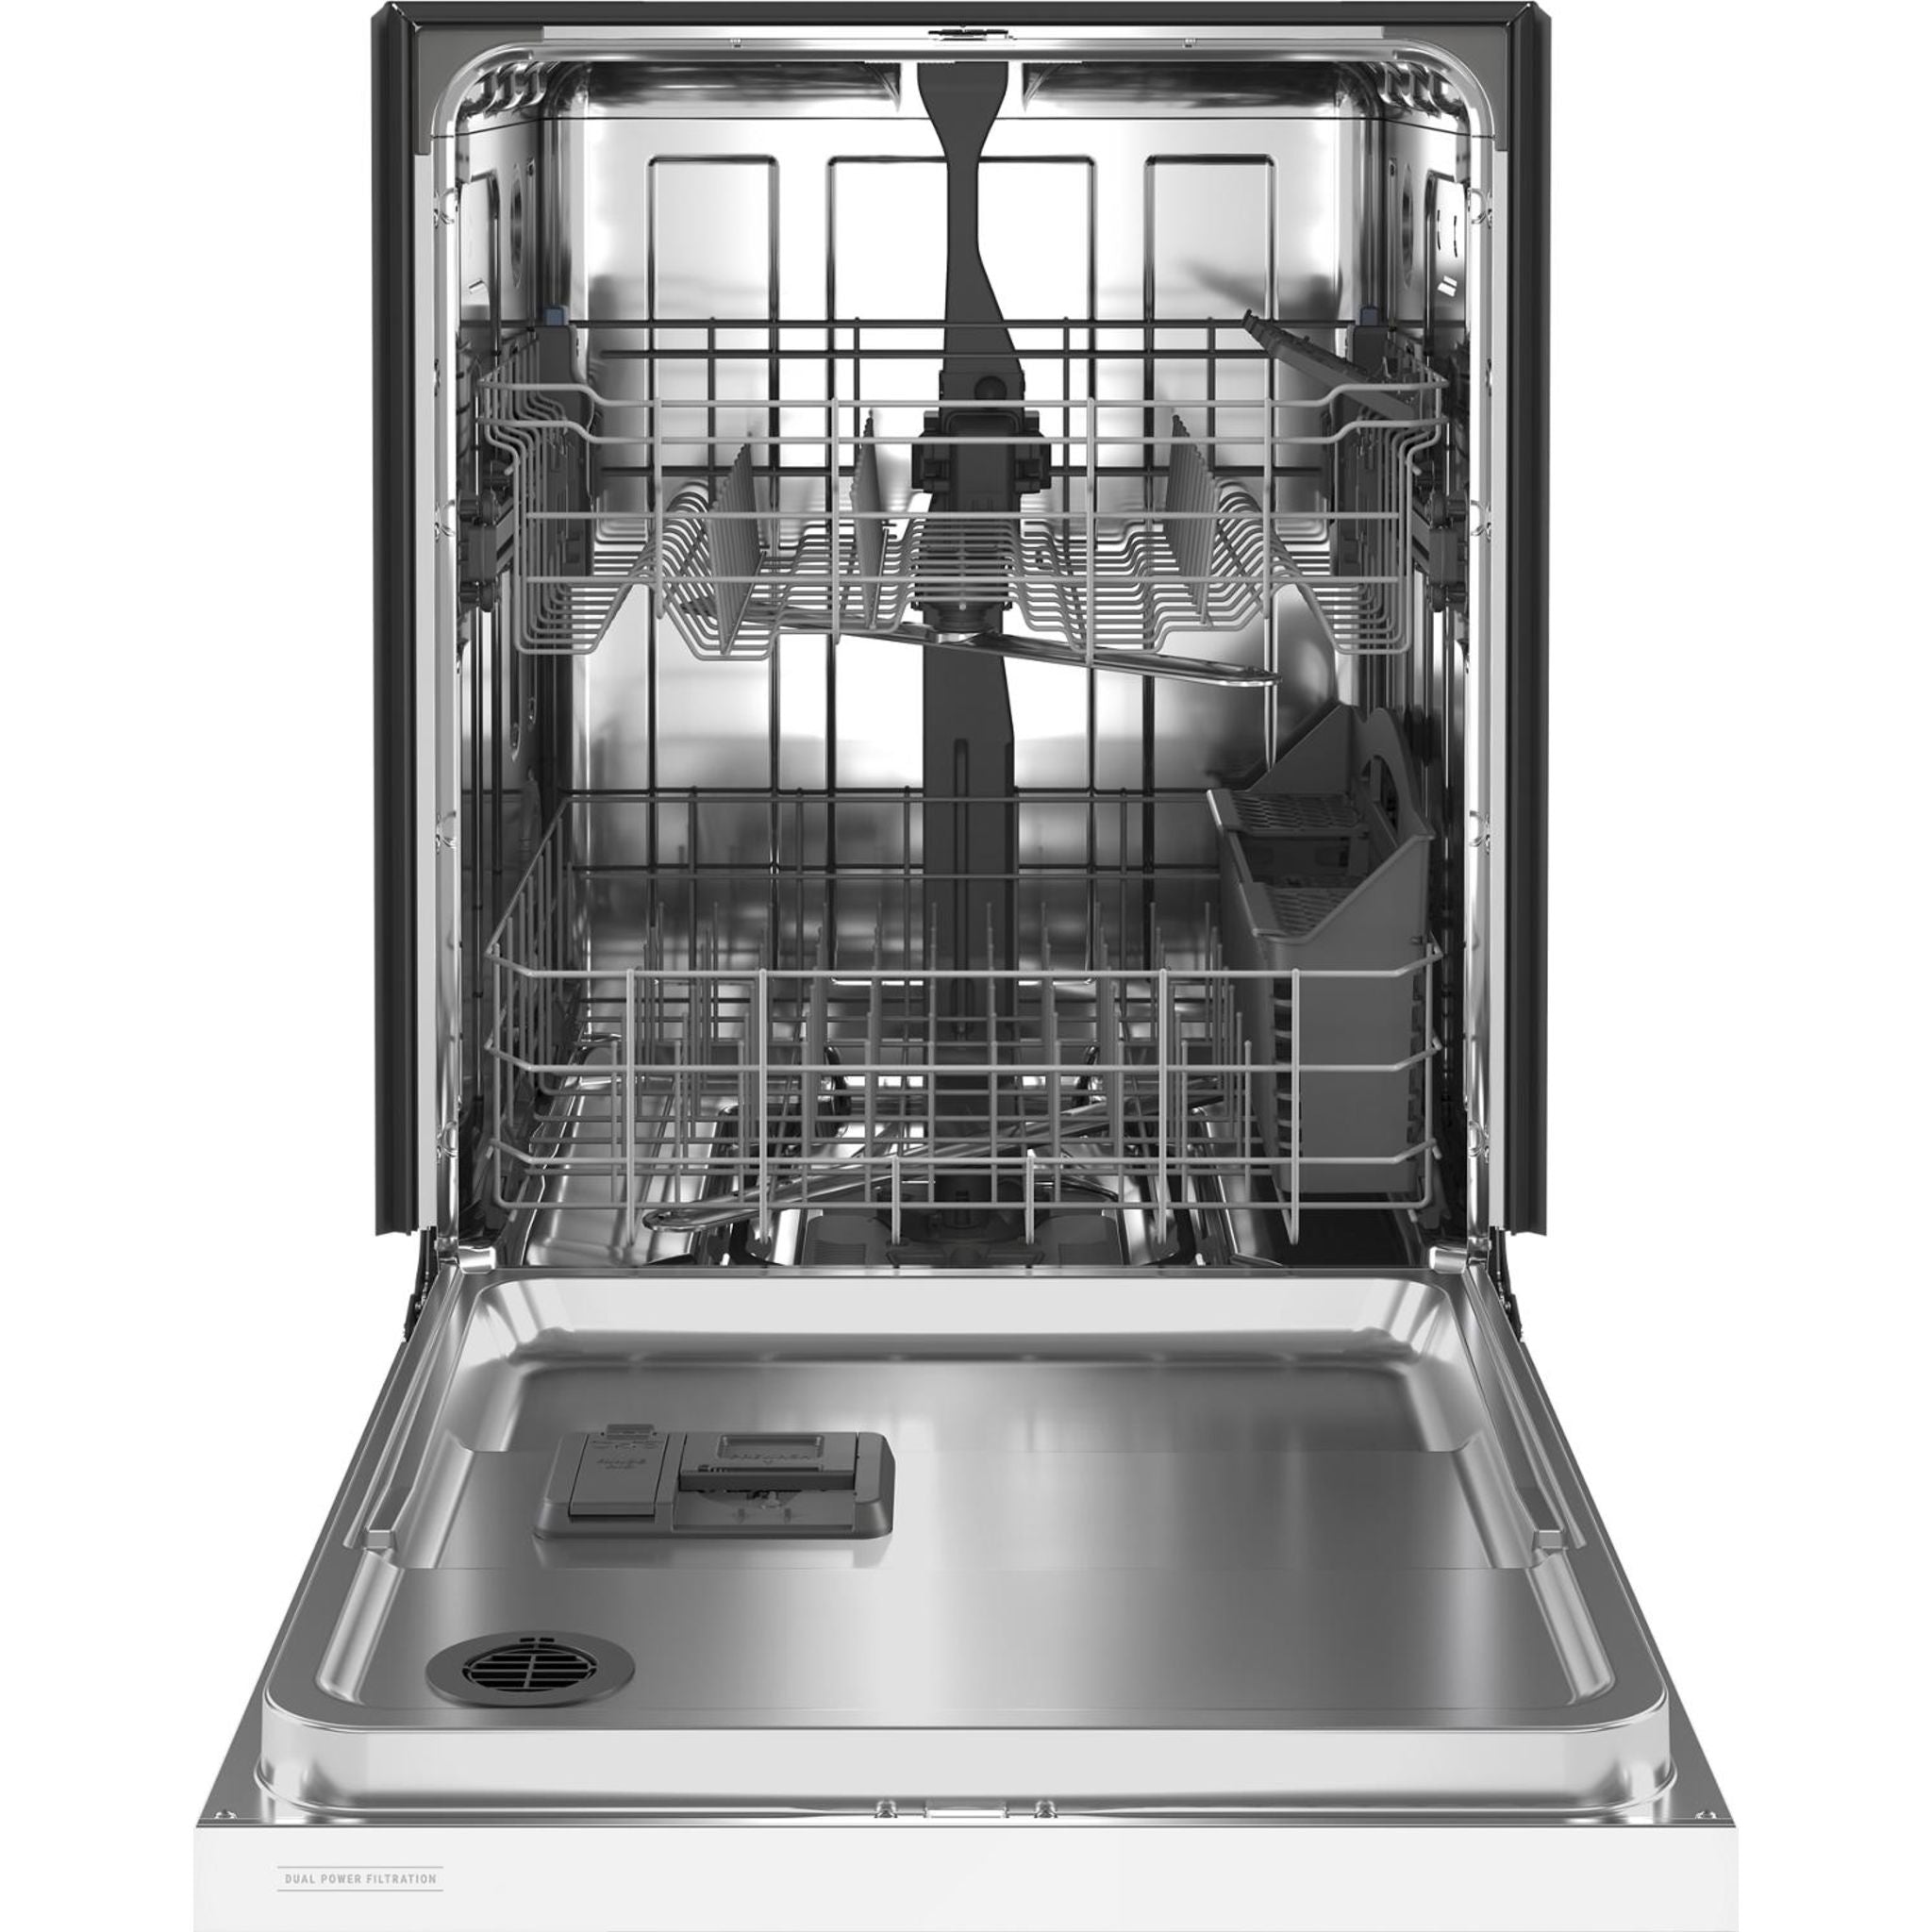 Maytag, Maytag Dishwasher Stainless Steel Tub (MDB4949SKW) - White